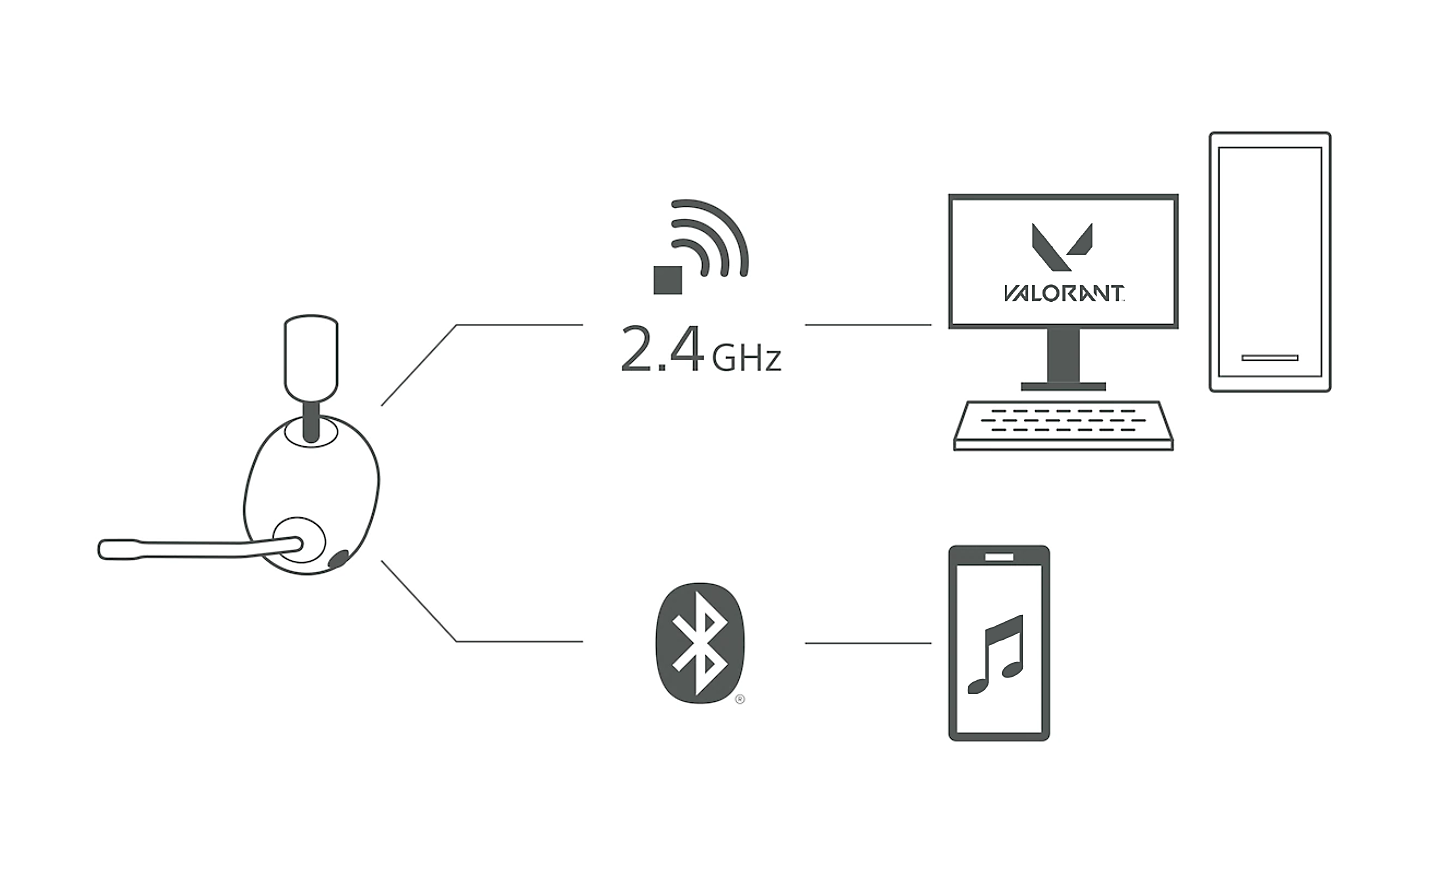 Imagen de unos audífonos con micrófono H9 con luces que conducen a una PC a través de un símbolo de conexión inalámbrica de 2,4 GHz y a un teléfono celular a través de un símbolo de Bluetooth